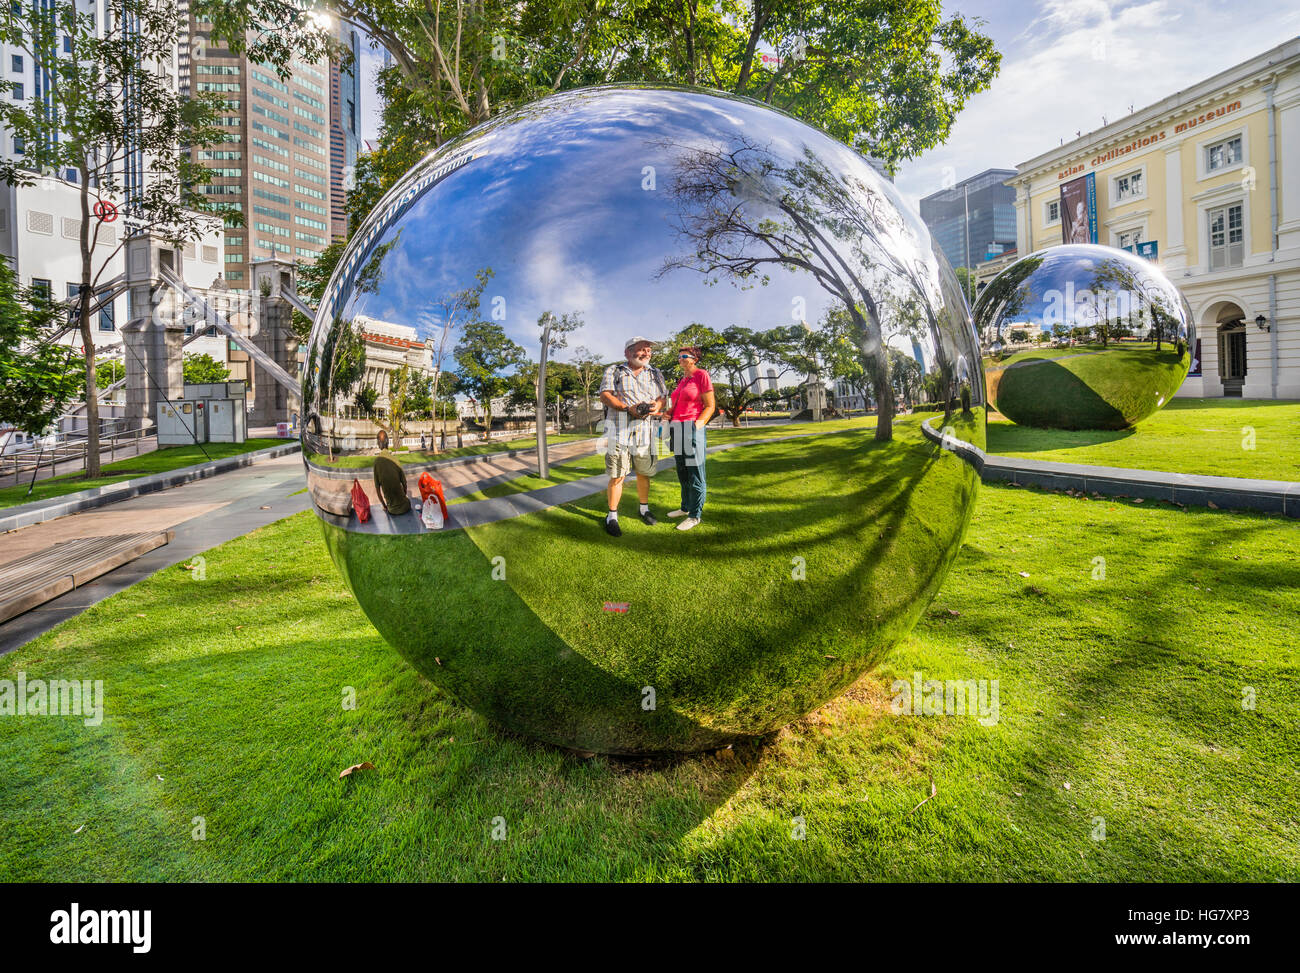 Singapur, Empress Place, el arte público Trust, bolas de espejo de acero inoxidable por Baet Yeol Kuan forman parte de una instalación de esculturas sobre el césped delante de Foto de stock